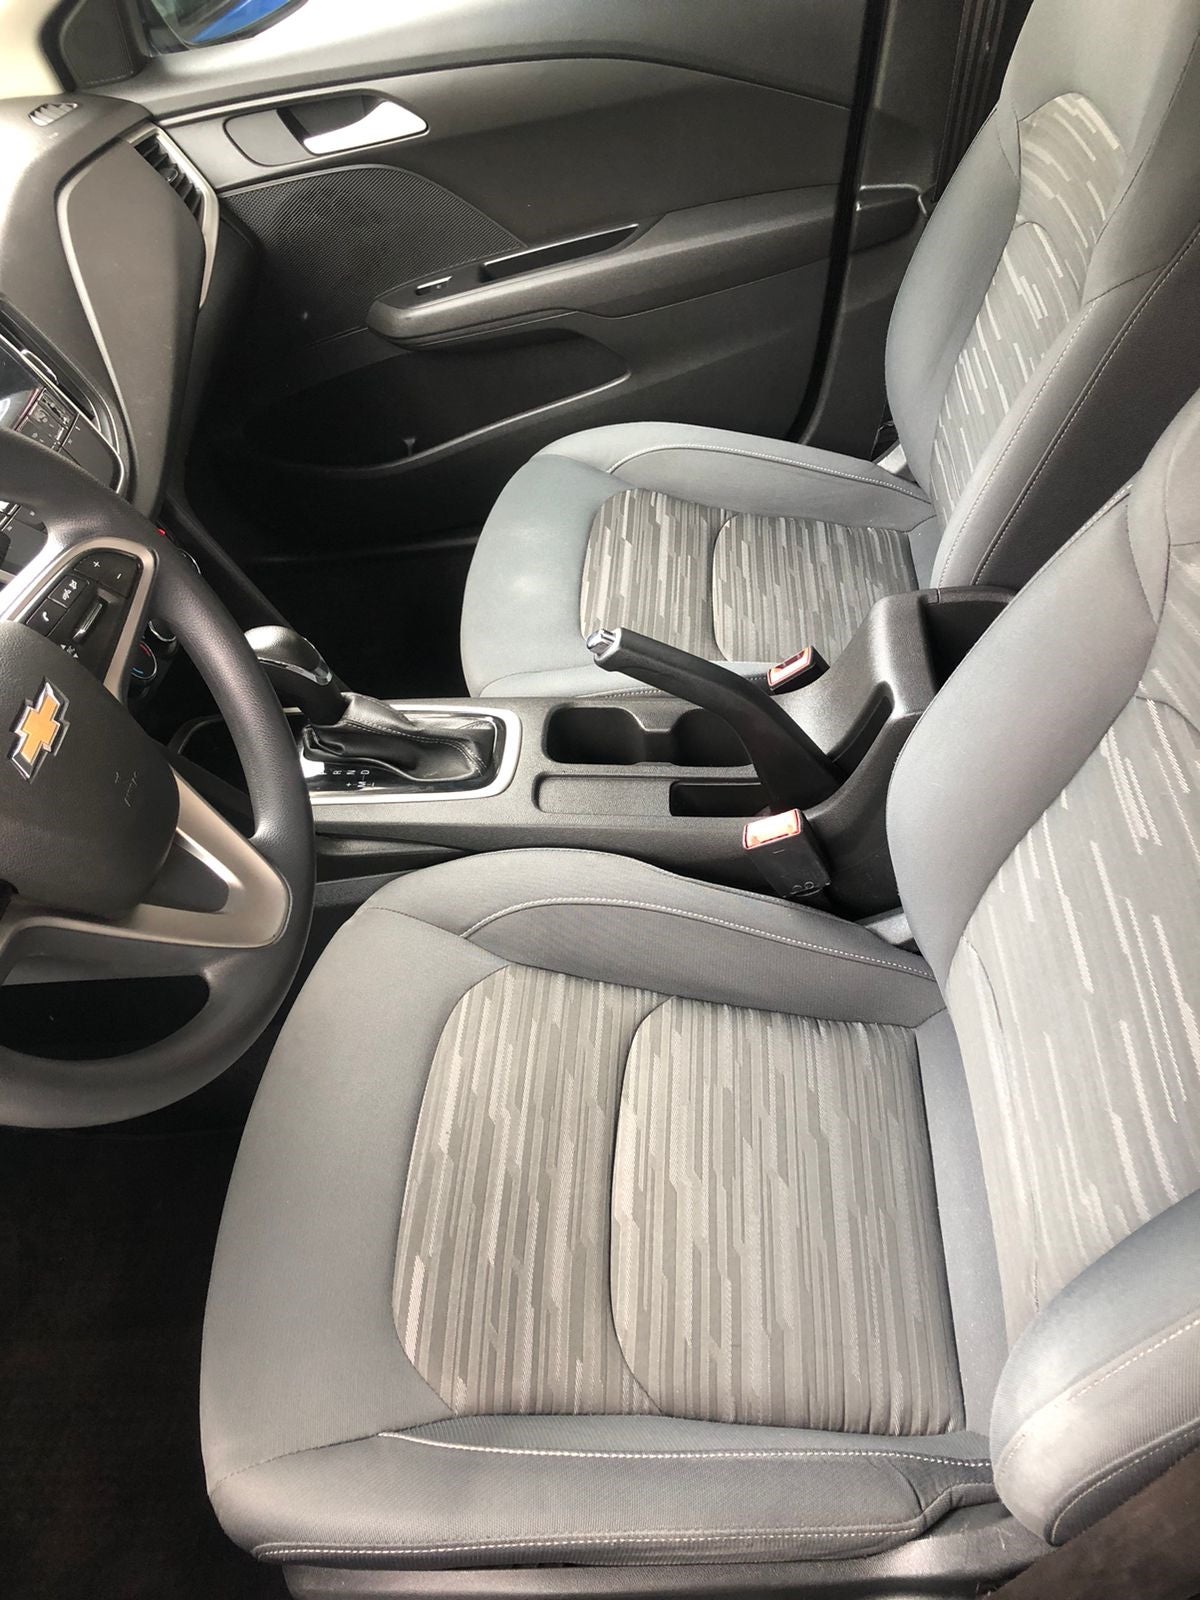 2019 Chevrolet Cavalier LS, L4, 1.5L, 107 CP, 4 PUERTAS, AUT